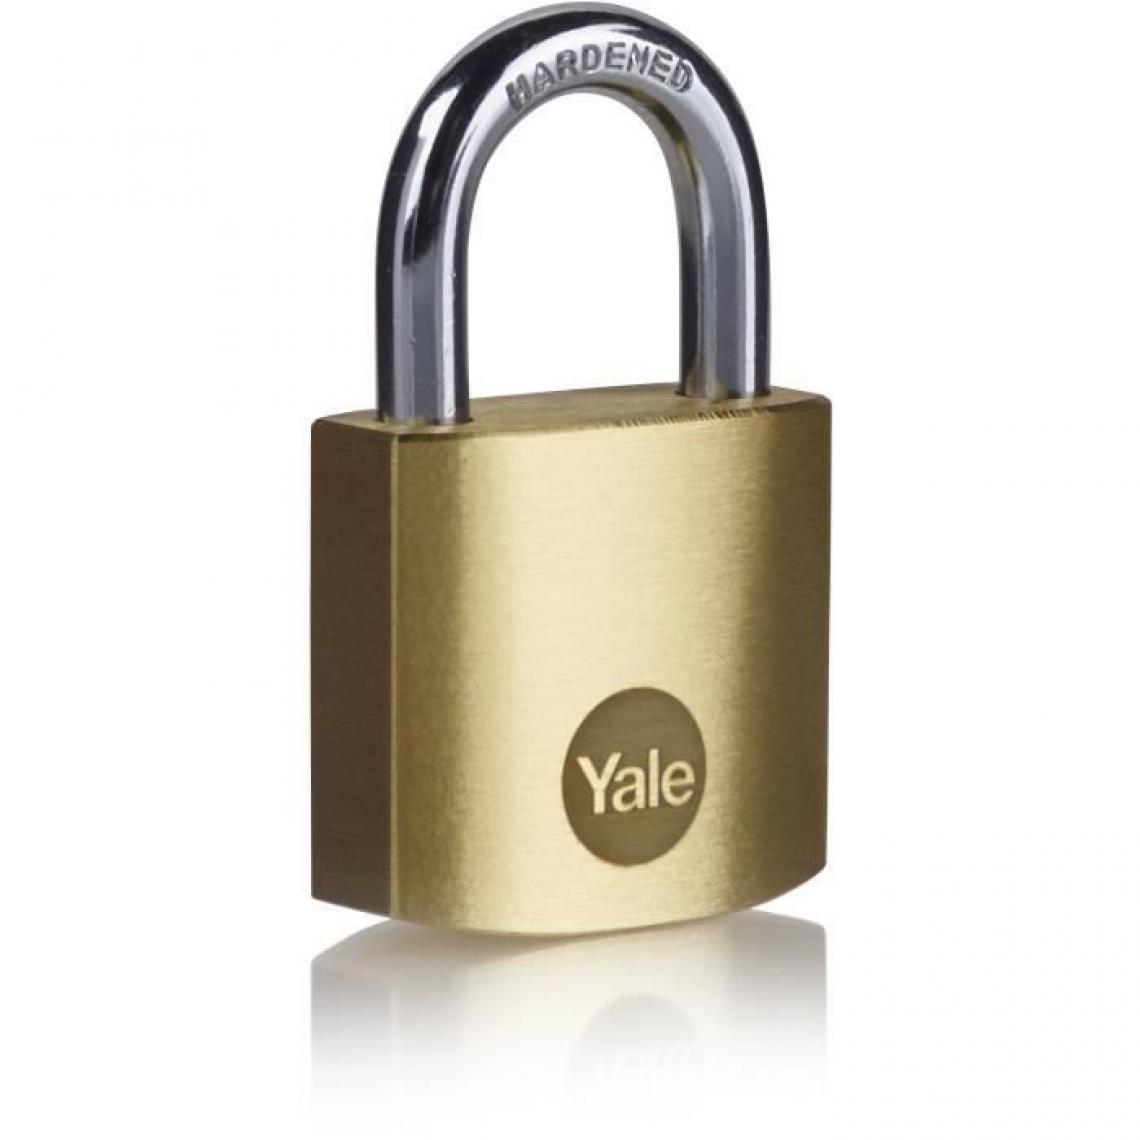 Yale - YALE Lot de 2 cadenas laiton s'entrouvrant 30 mm, anse acier cémenté, 3 cles - Verrou, cadenas, targette